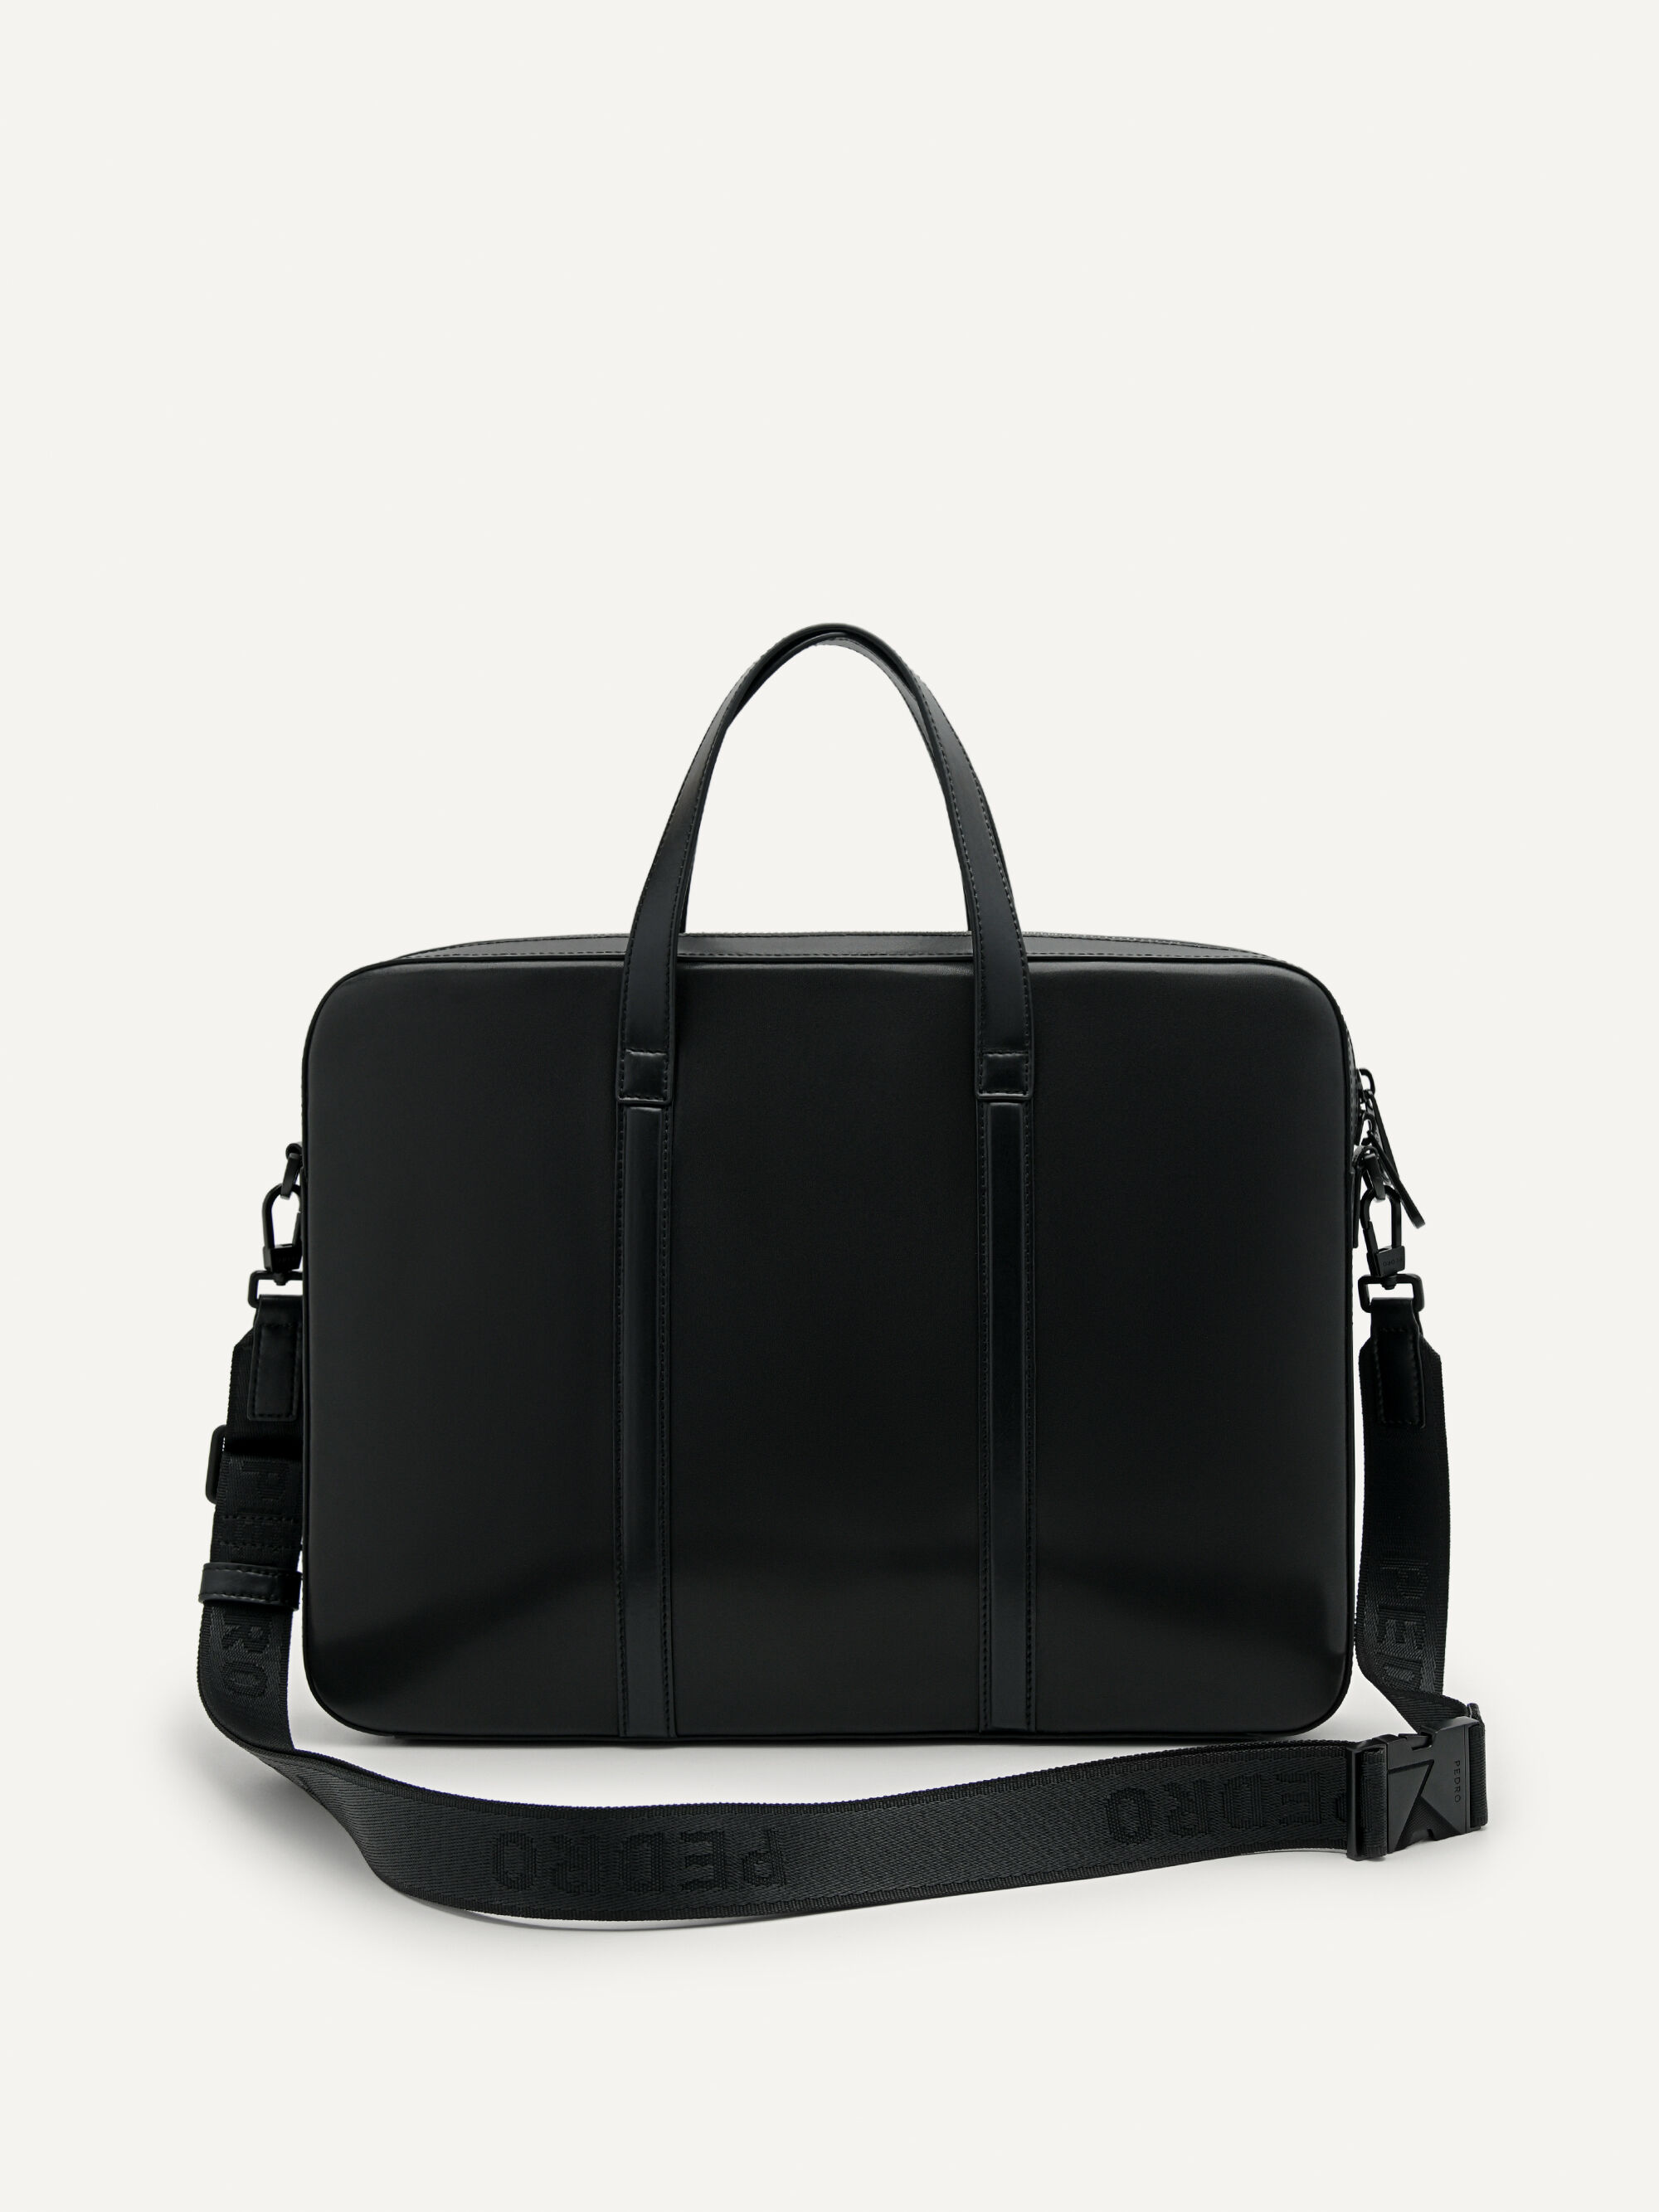 Men's Leather Briefcases & Business Bags | Saint Laurent | YSL